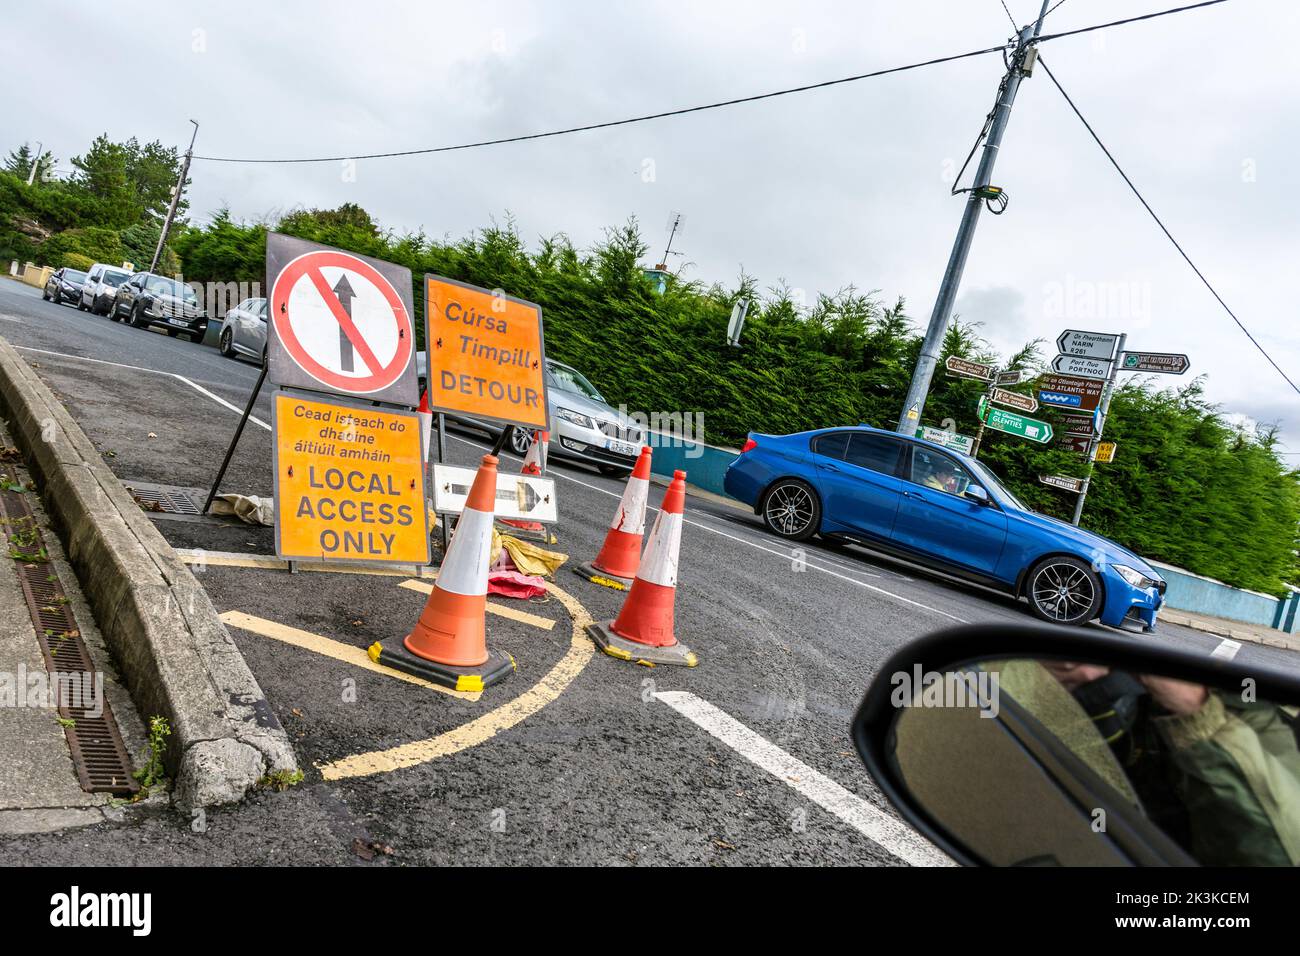 Segnaletica stradale. Solo accesso locale, deviazione, in lingua inglese e gaelica irlandese. N56 Road, County Donegal, Irlanda. Foto Stock